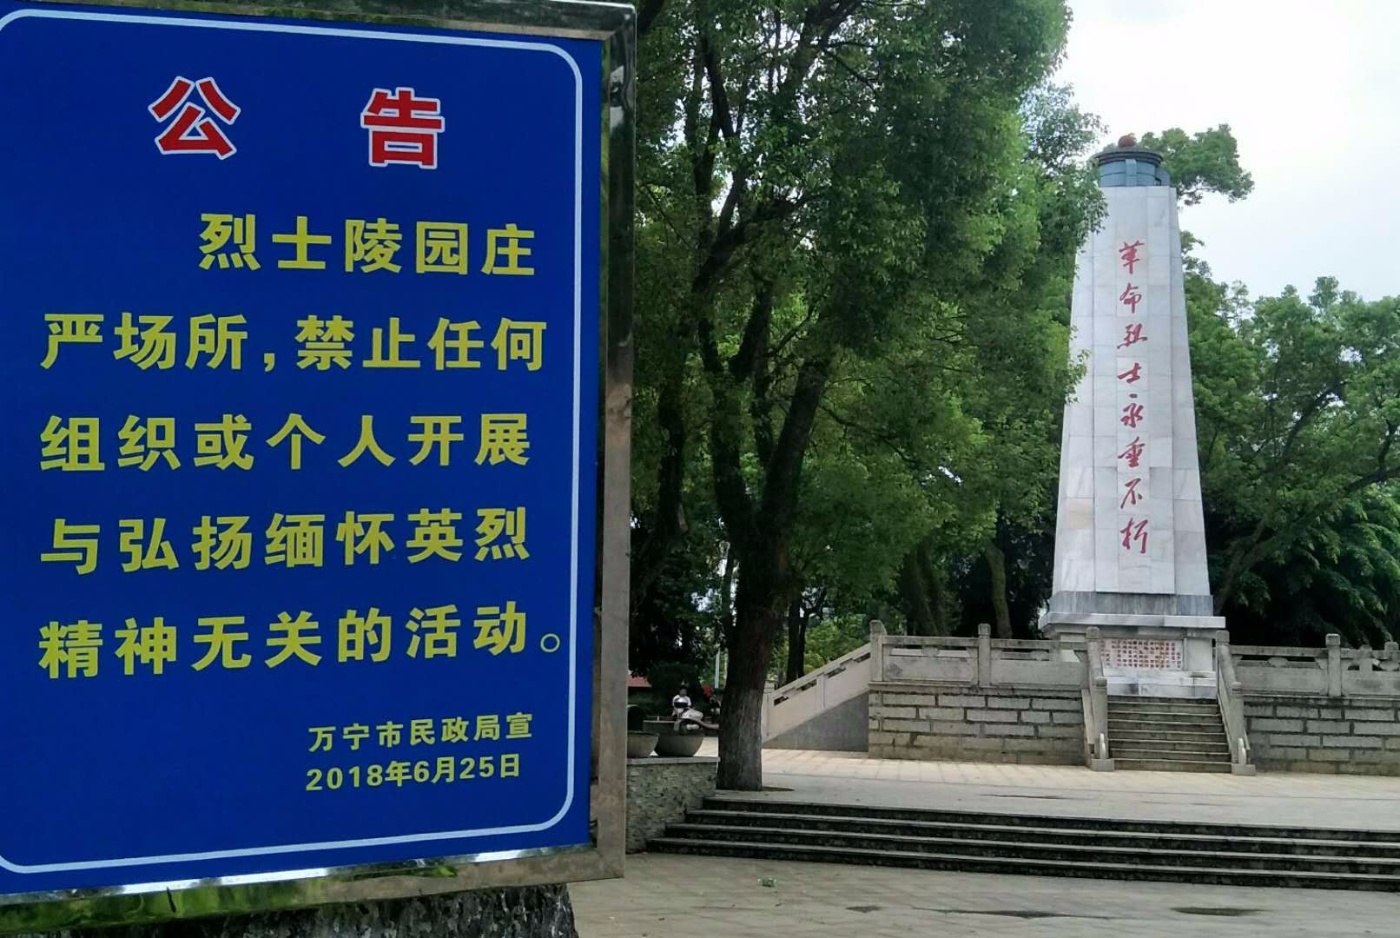 海南万宁市革命烈士陵园。来源:海南政法微博